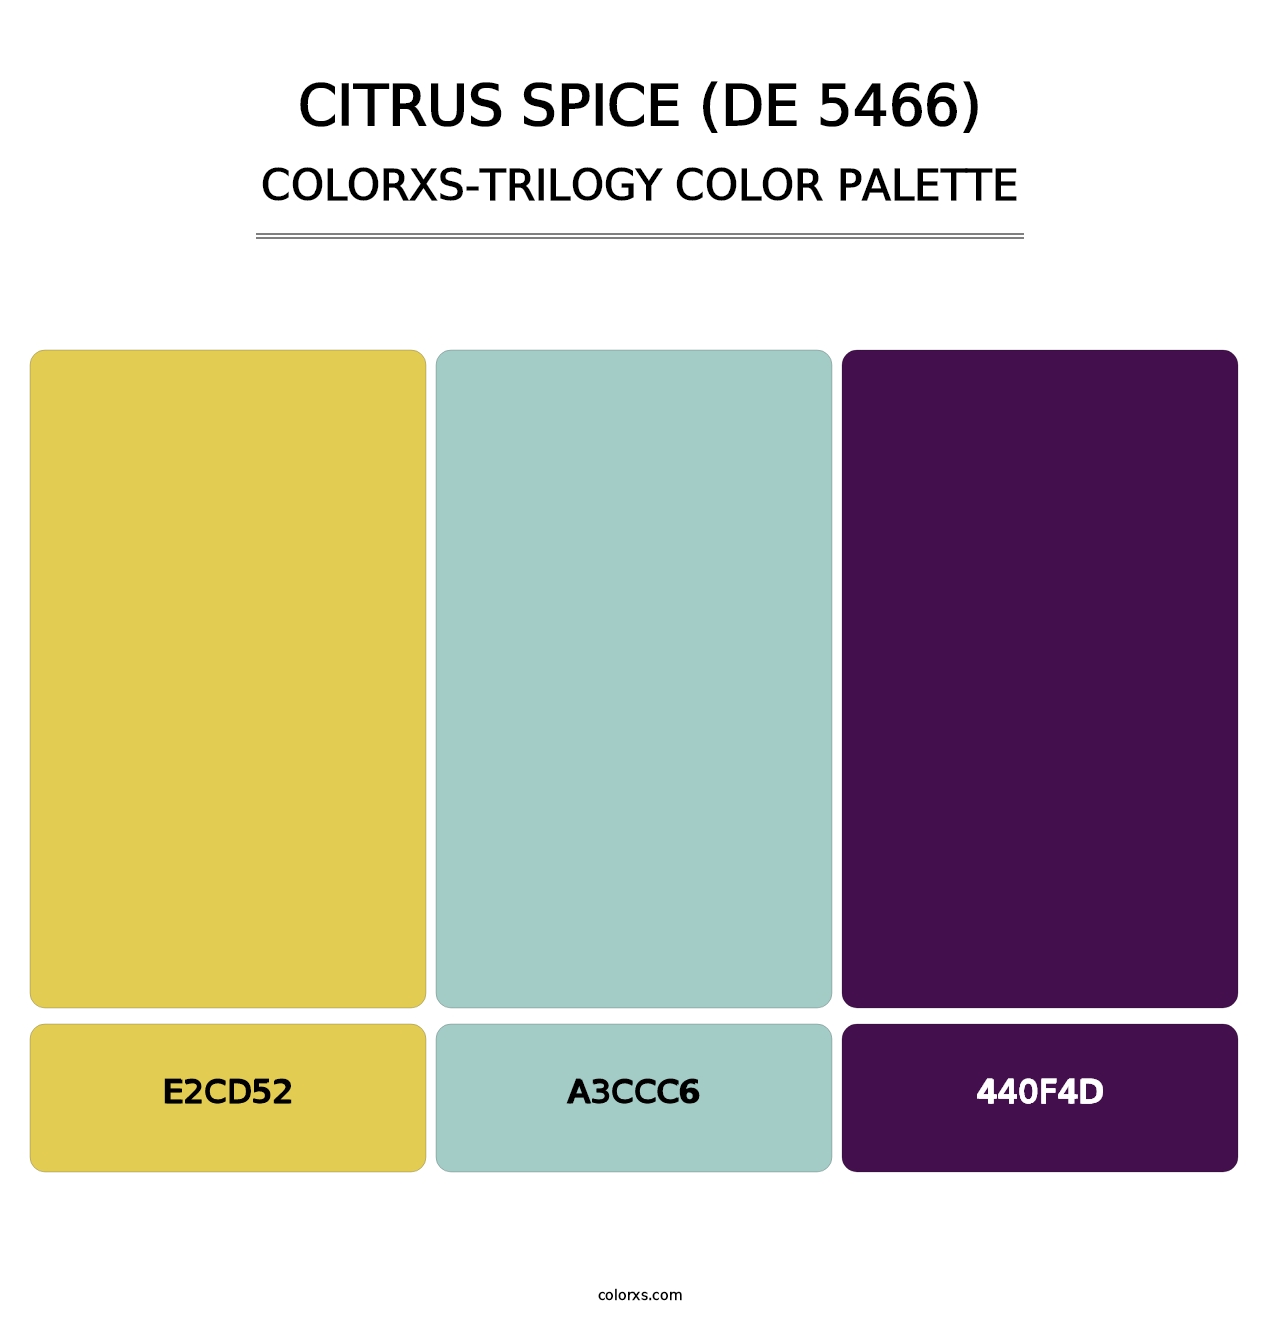 Citrus Spice (DE 5466) - Colorxs Trilogy Palette